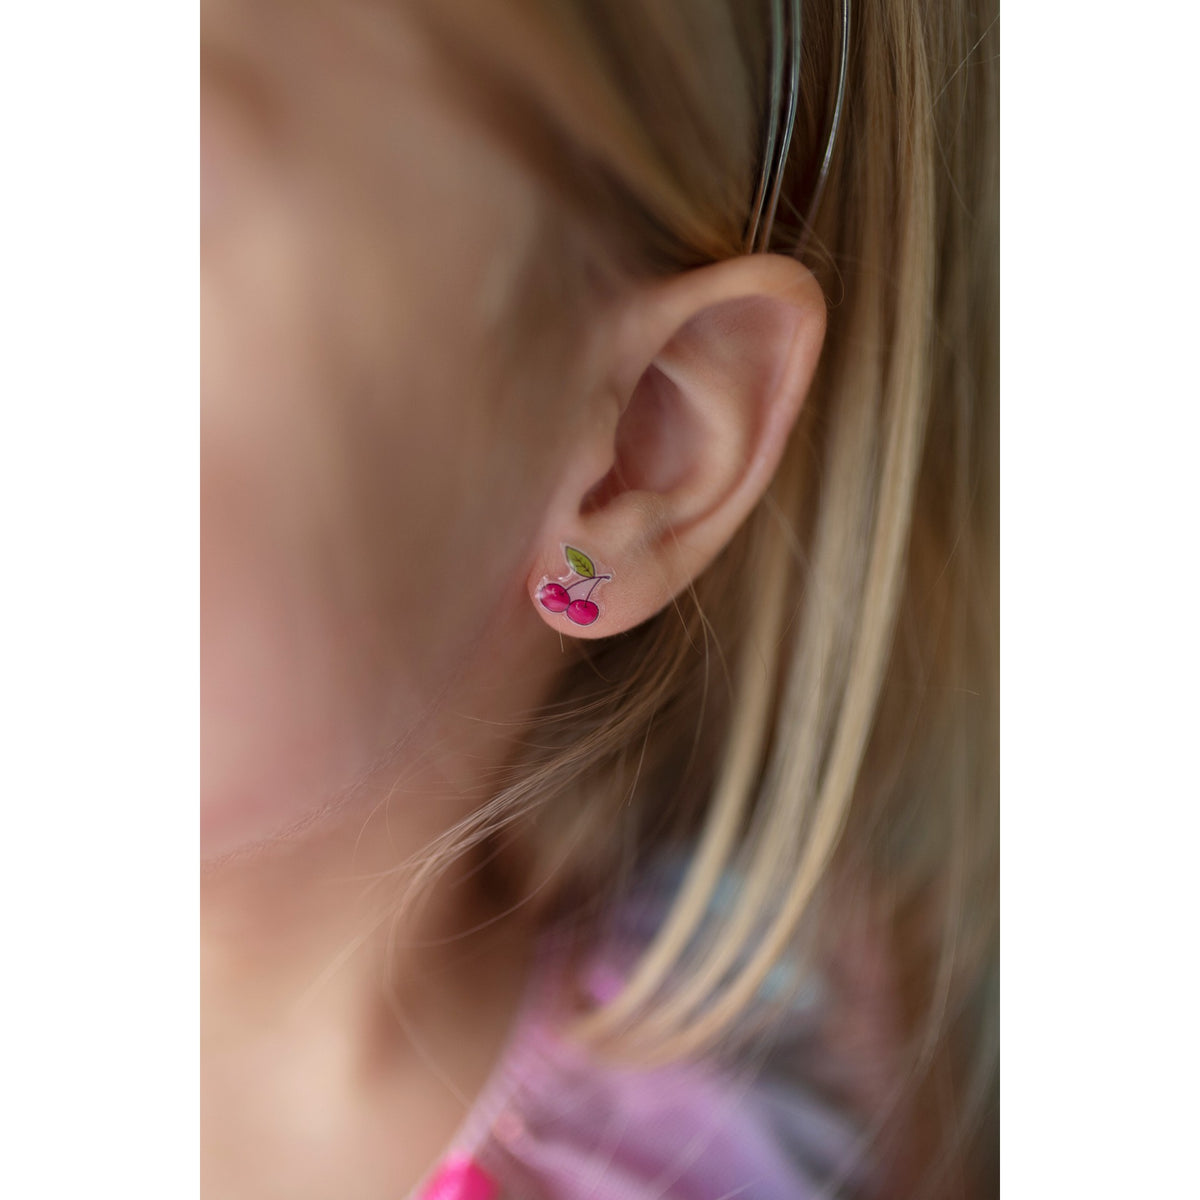 Diese Ohrringe sind für die Einhornliebhaberin in deinem Leben. 30 Paar Ohrringe zum Anstecken! Jeden Tag im Monat ein anderes Paar. Mit unseren NEUEN Ohrringen mit Einhornmotiv kannst du den Look von gepiercten Ohren erreichen, ohne dir die Ohren piercen zu lassen. 